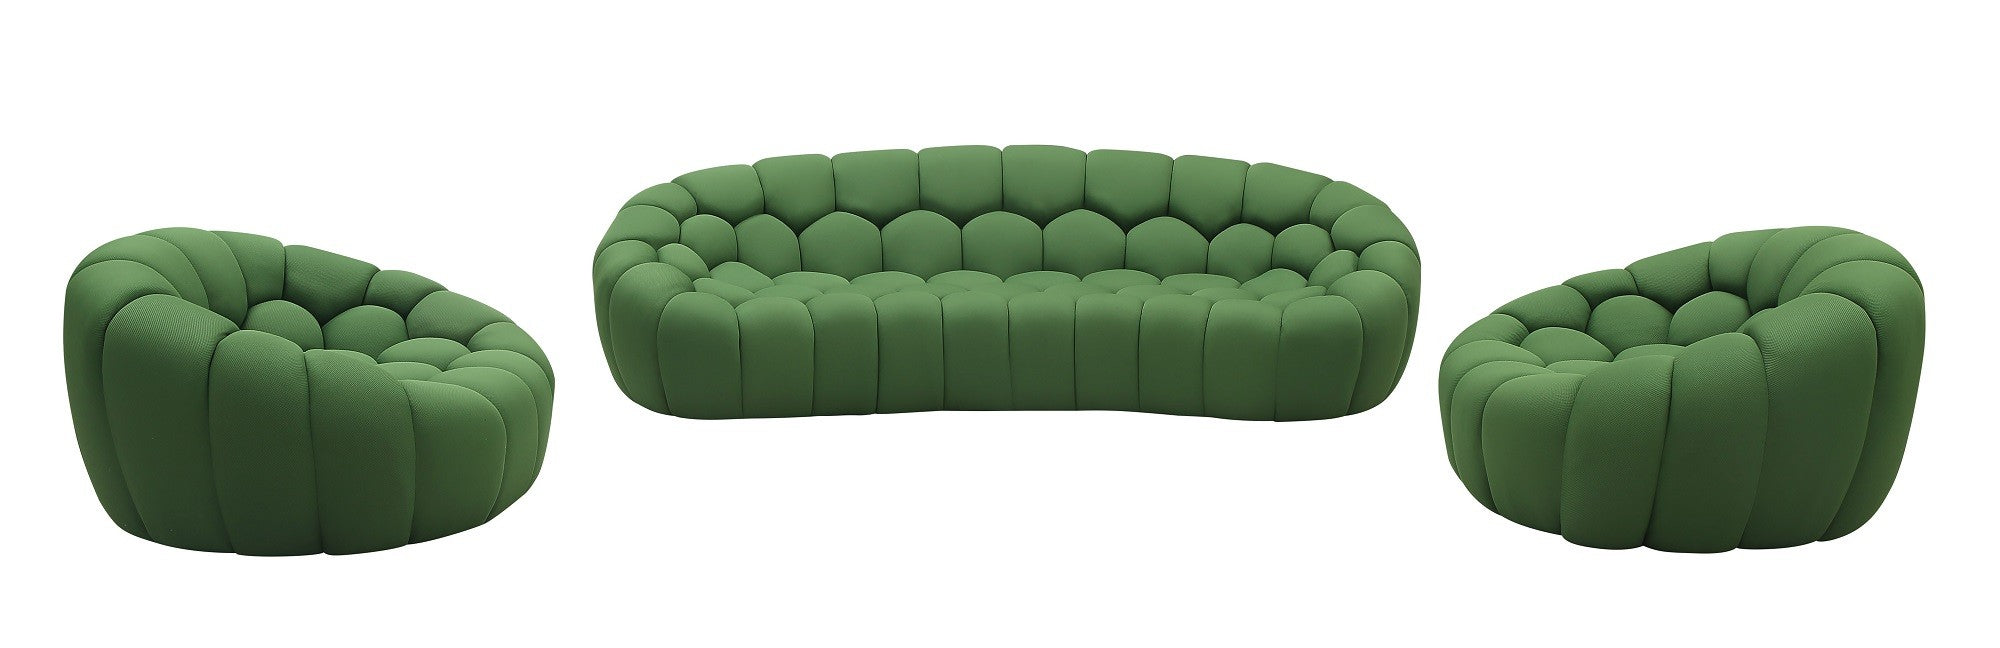 J&M Furniture - Fantasy 3 Piece Sofa Living Room Set in Green - 18442-3SET-GN